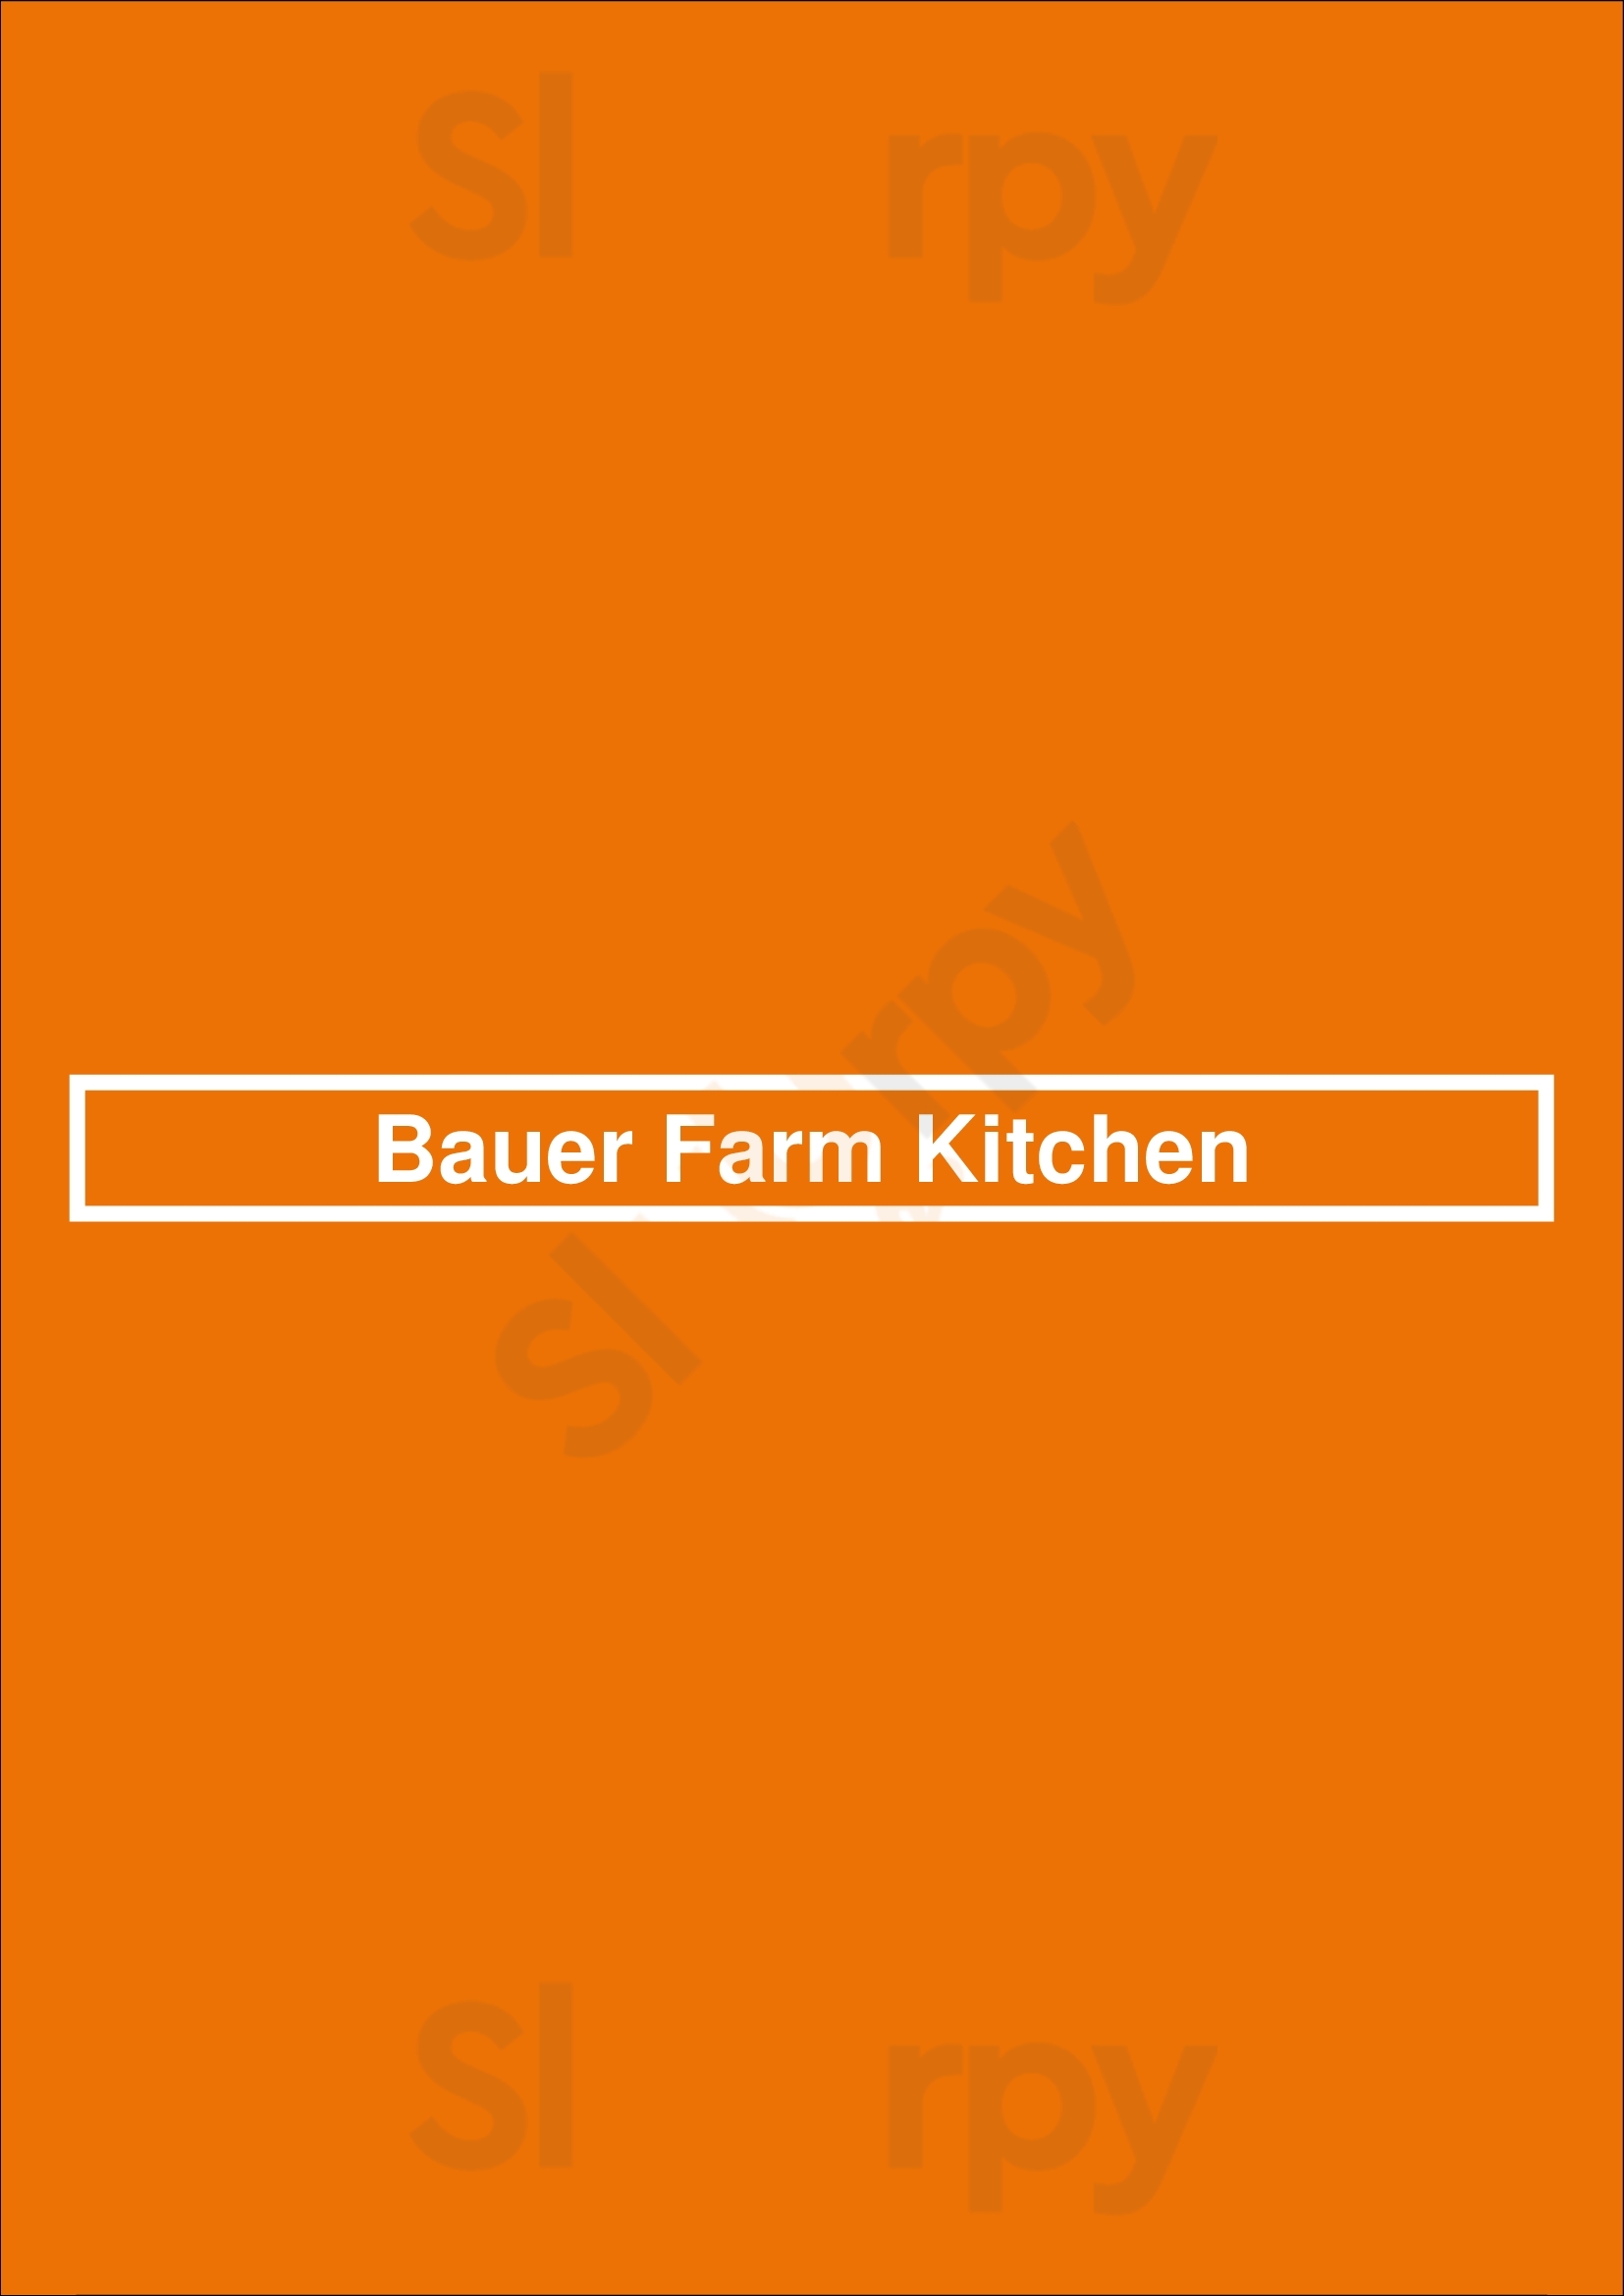 Bauer Farm Kitchen Cincinnati Menu - 1